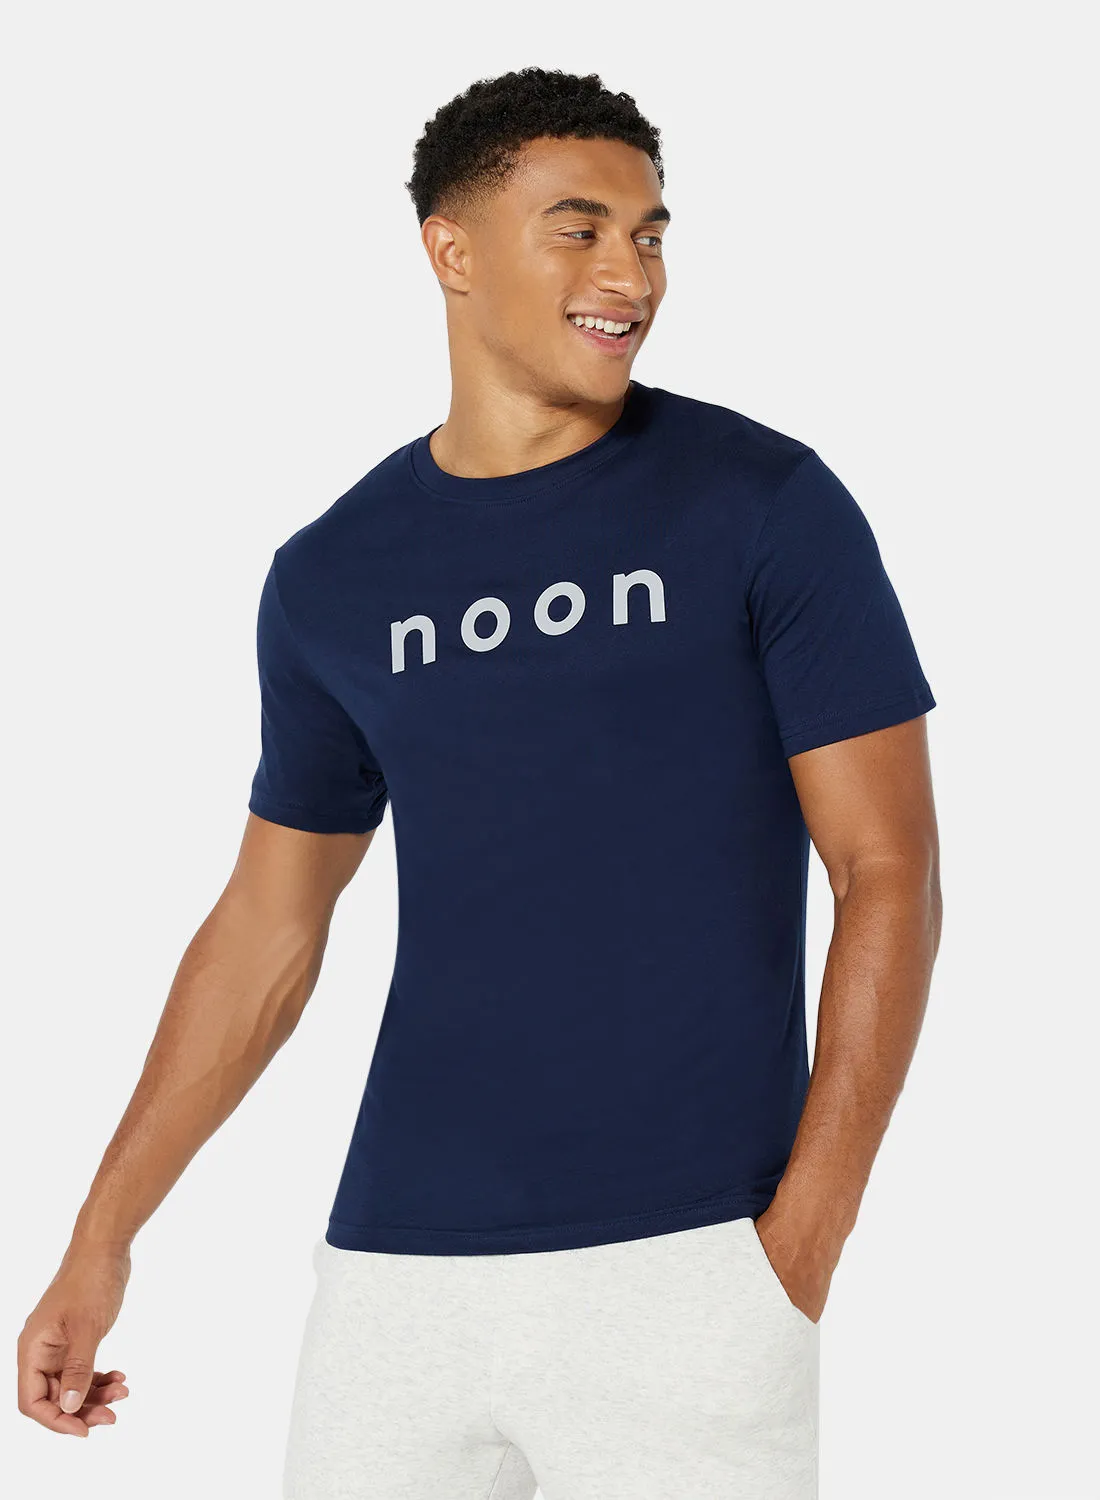 noon Merchandise T-Shirt For Men Navy